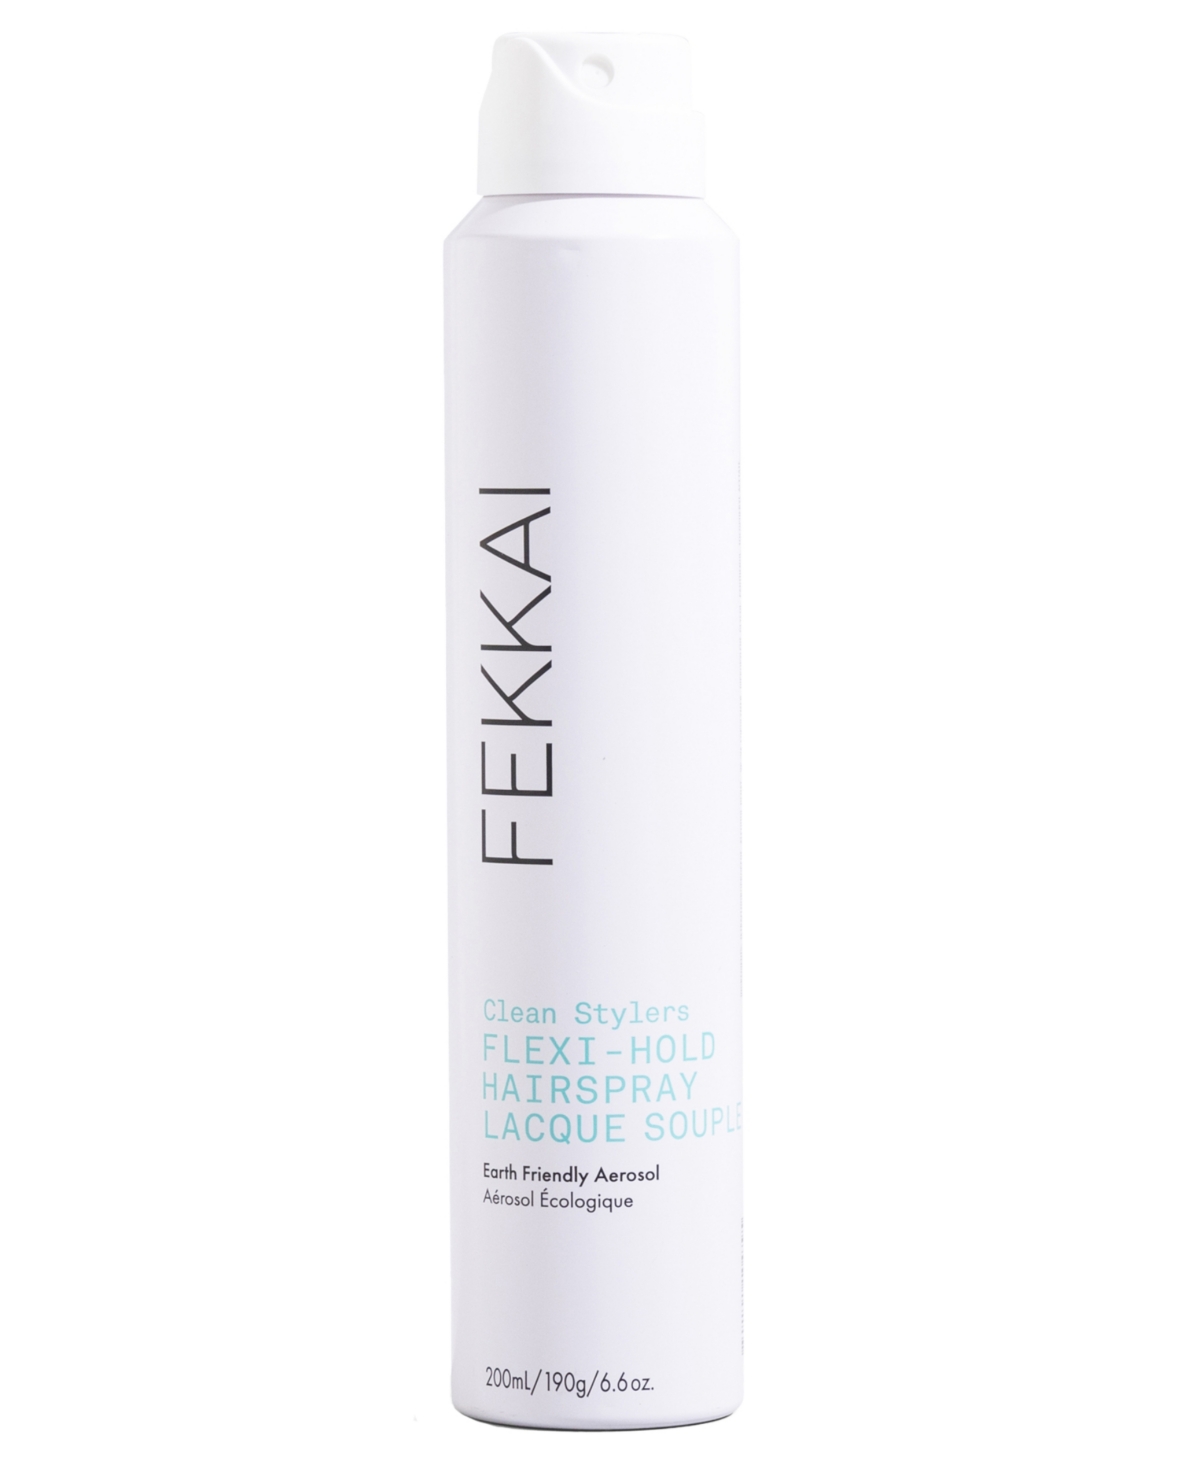 Fekkai Clean Stylers Flexi-Hold Hairspray, 6.6 oz.